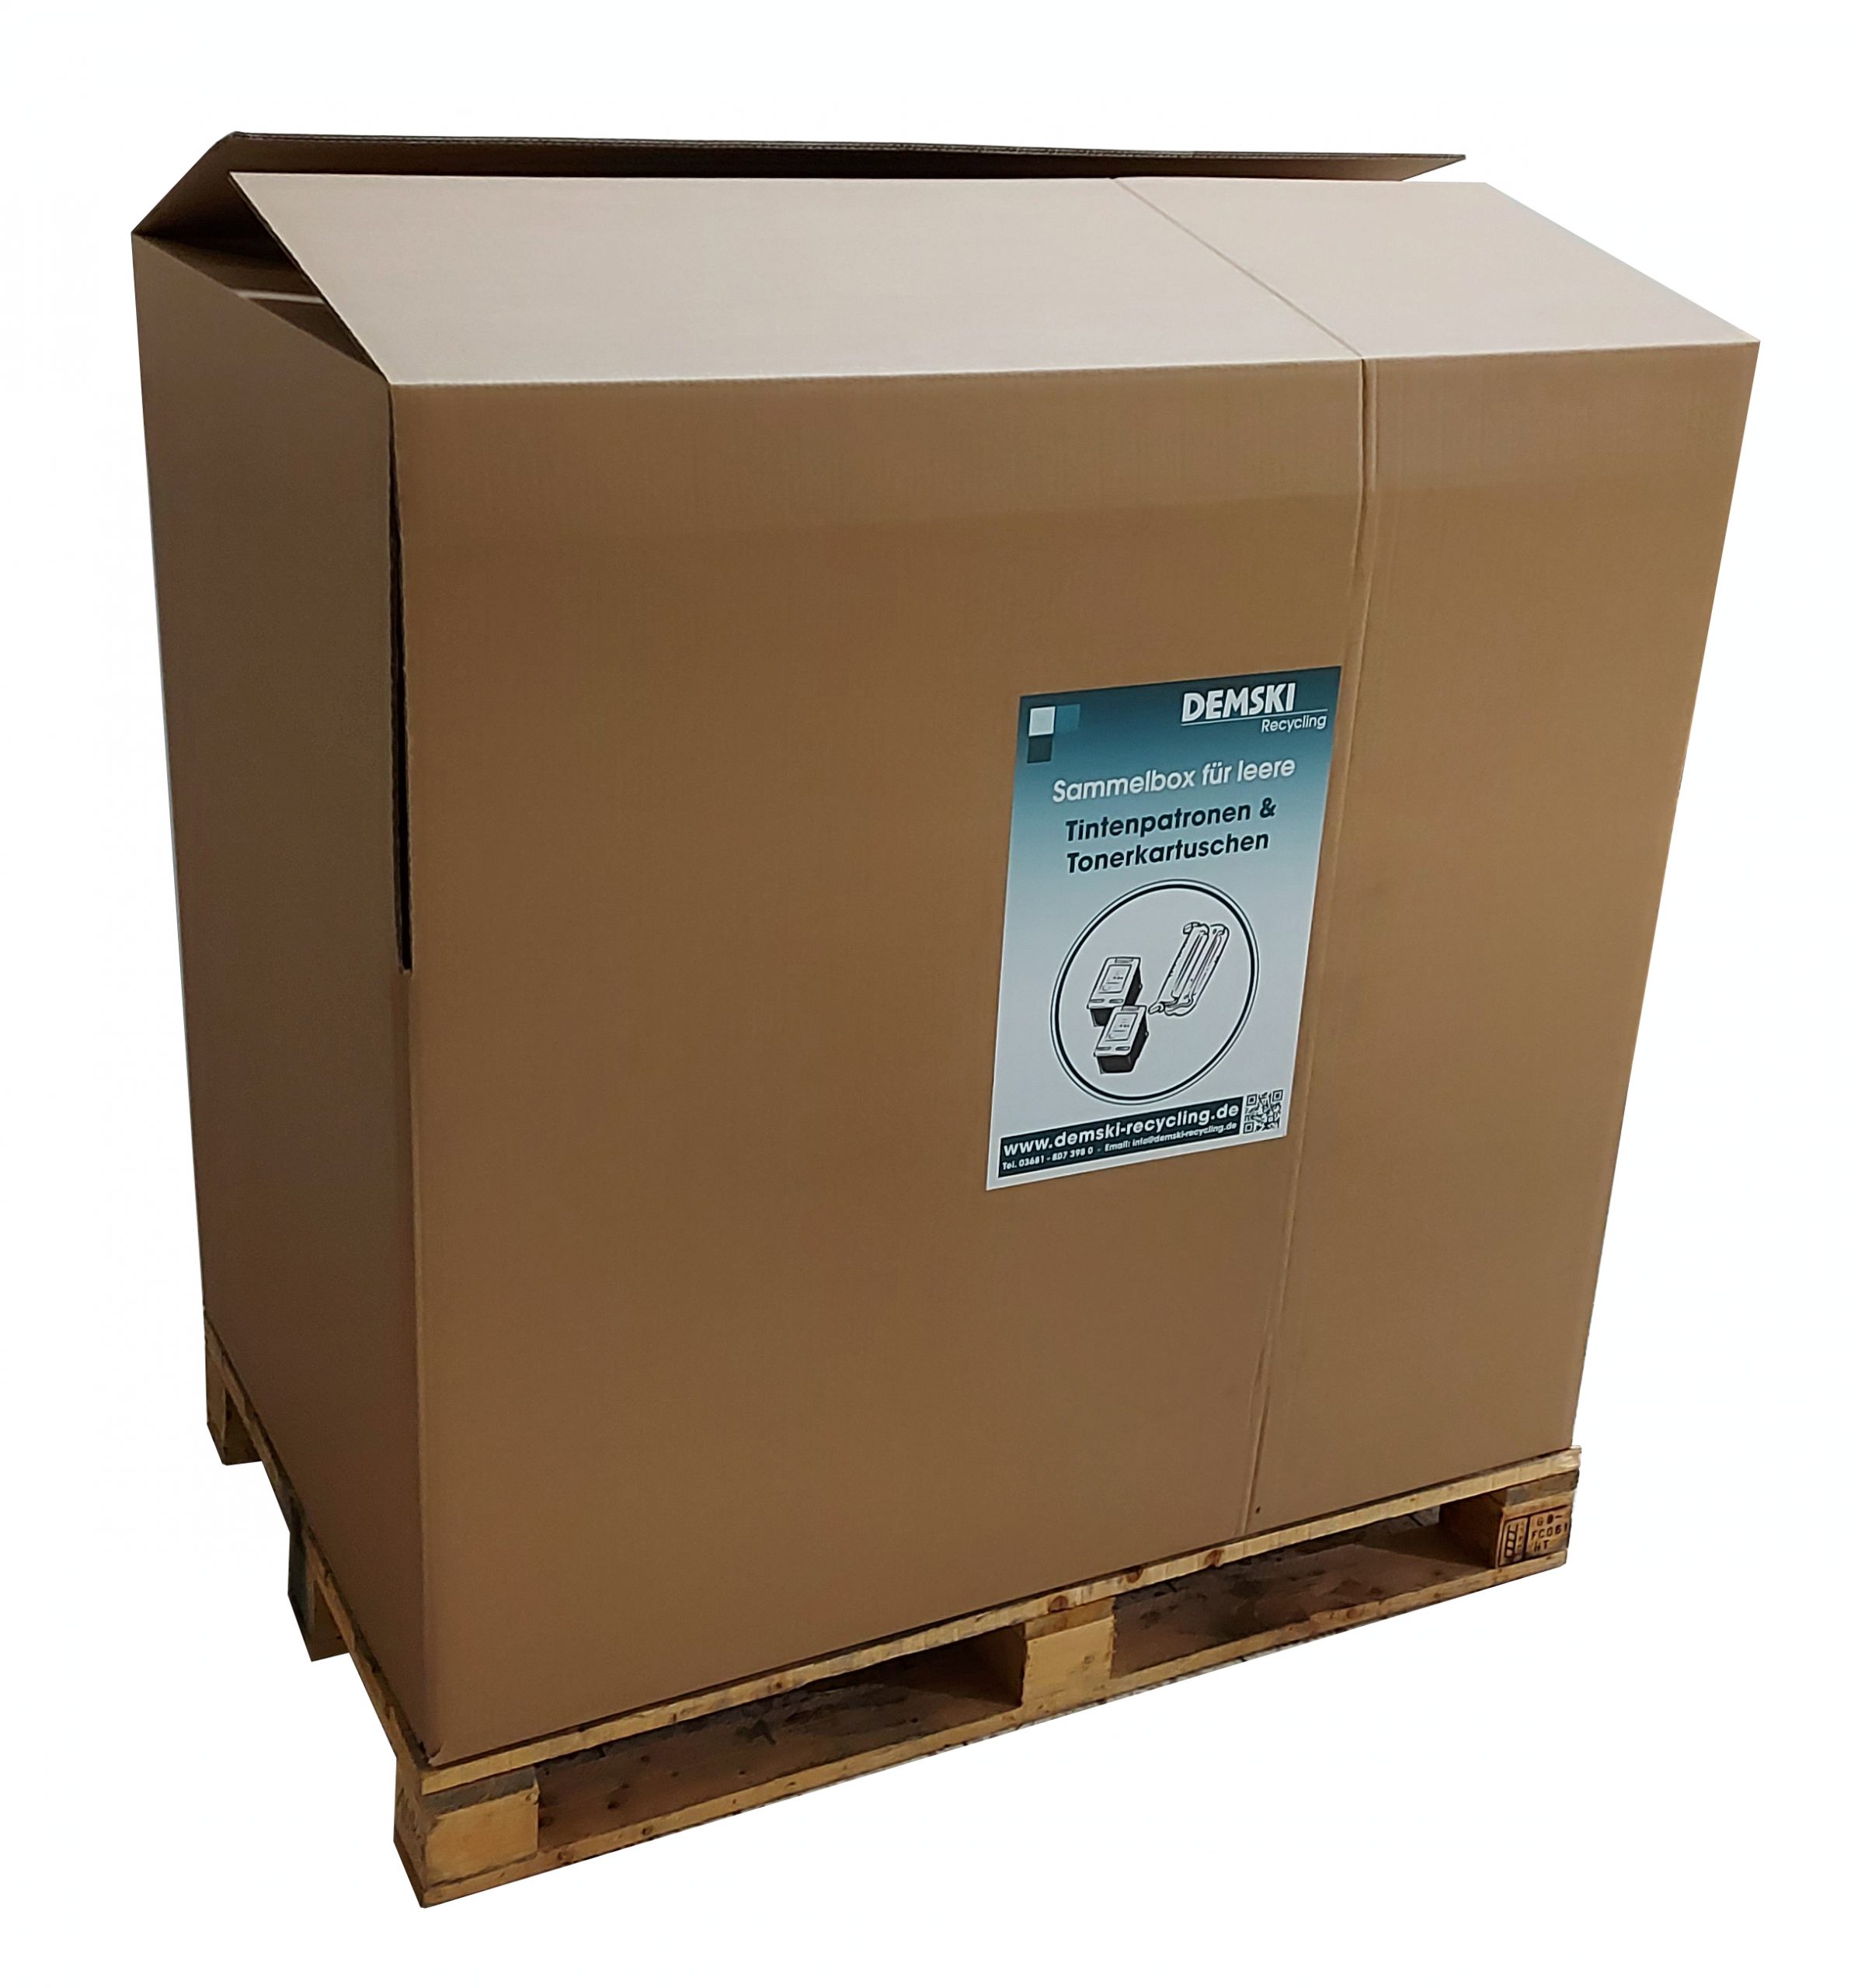 Die Demski Recycling Palettensammelbox für leere Druckerpatronen.